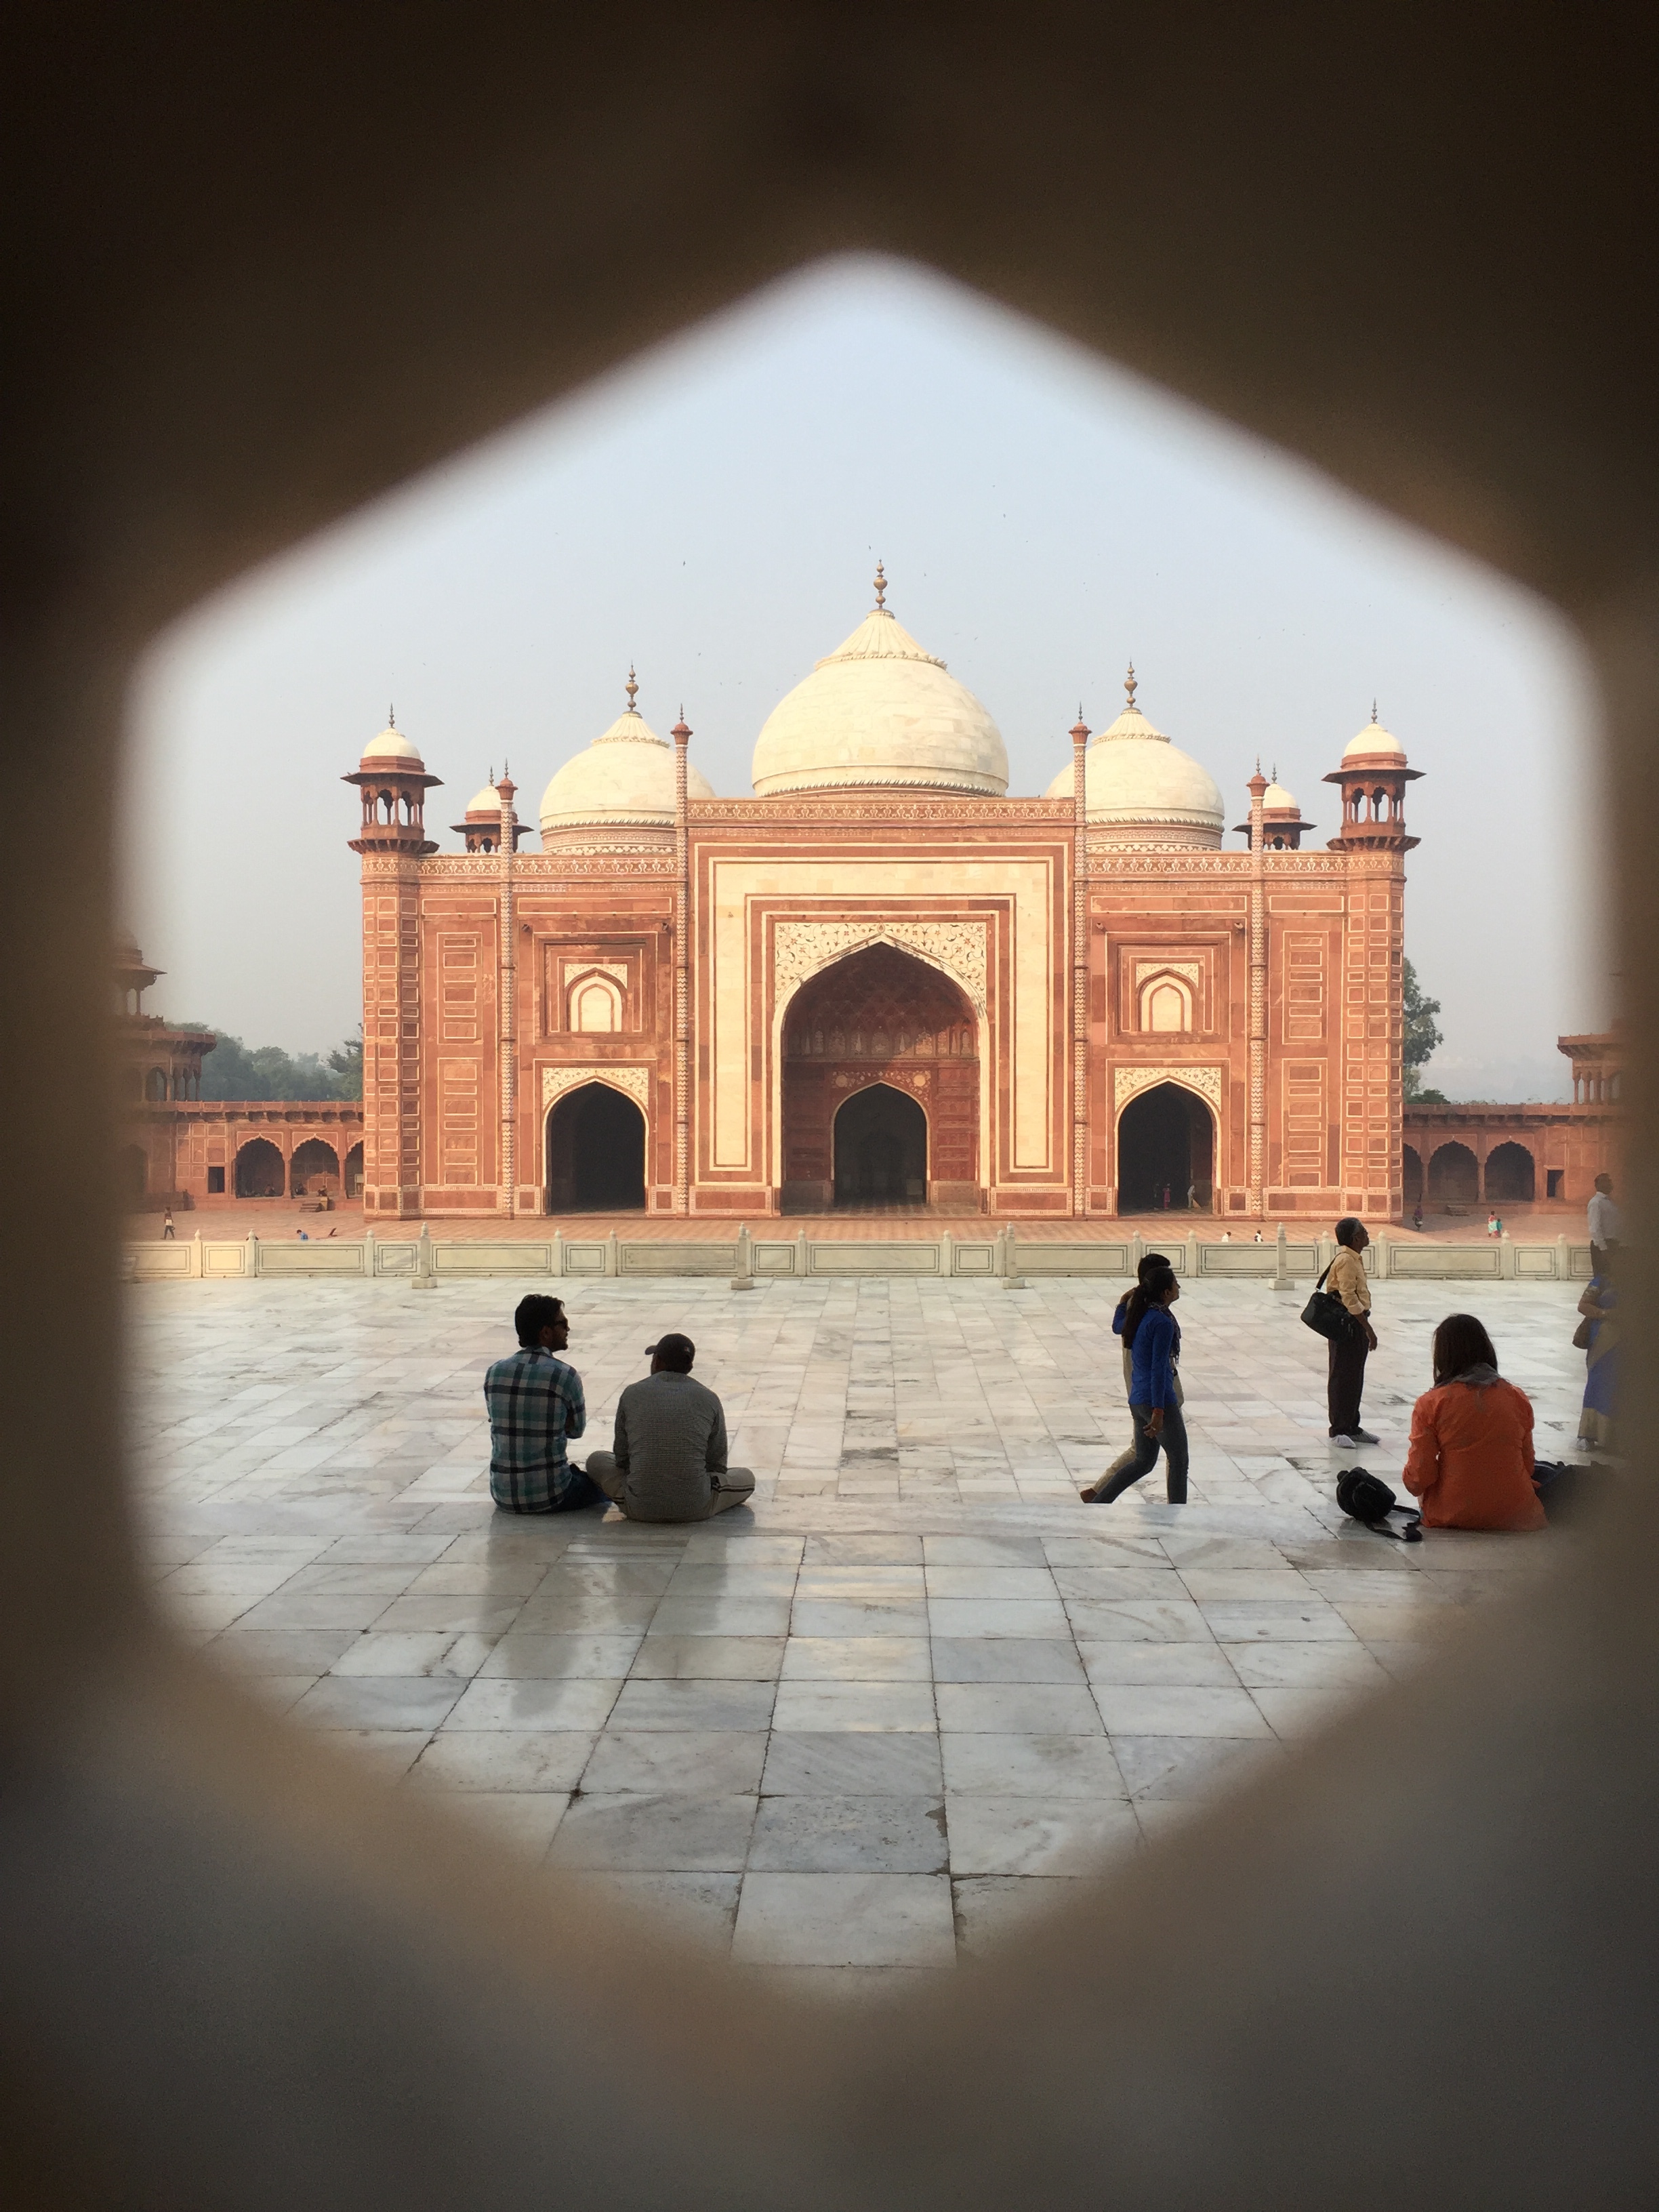 Inside Taj Mahal complex